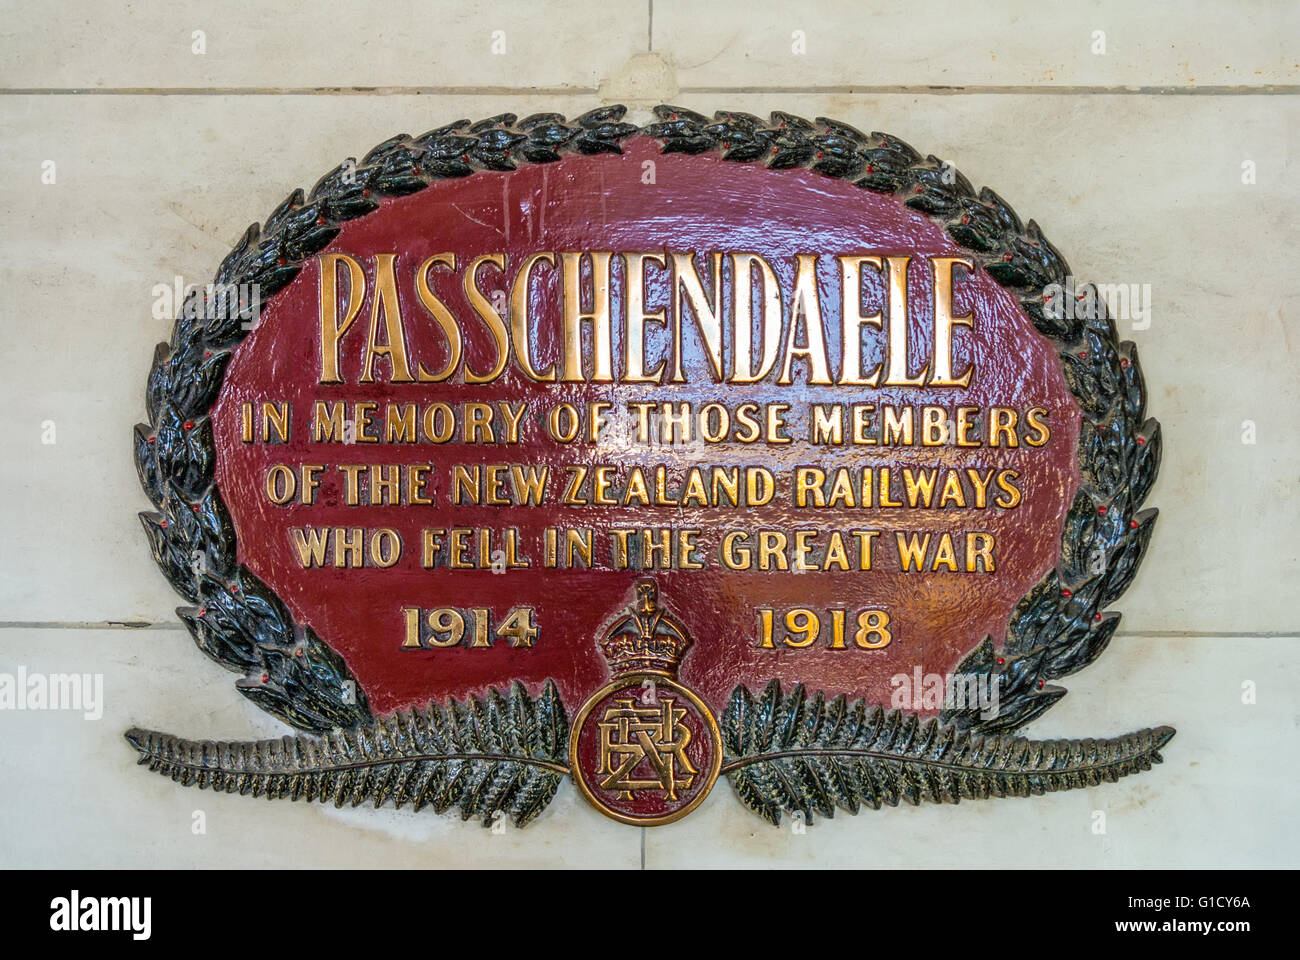 Il Passchendaele targa commemorativa a Dunedin stazione ferroviaria, Nuova Zelanda. Foto Stock